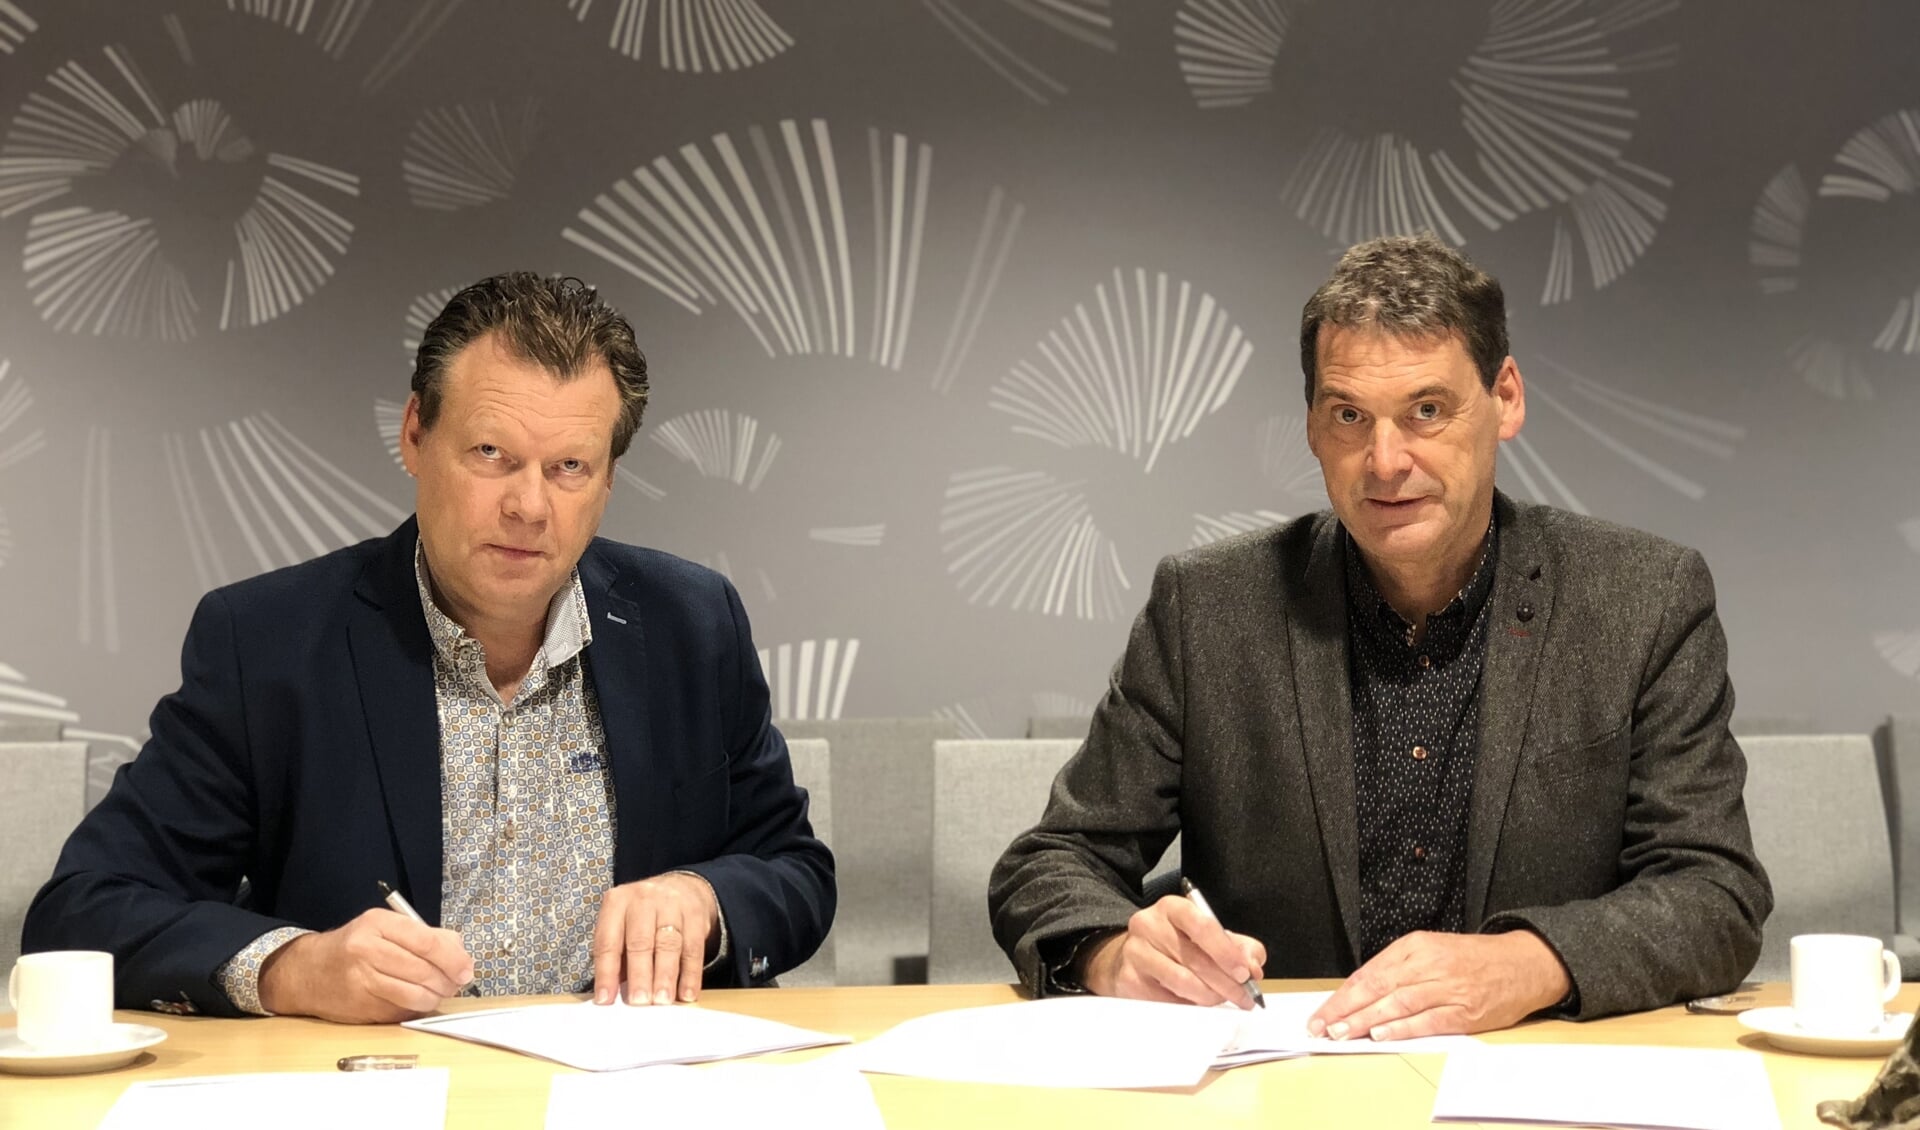 Archiefbeeld: Eus Witlox (wethouder Meierijstad) en Jan van Vucht (Area) tekenen contracten voor de verkoop van bouwgrond in de kern van Veghel. 